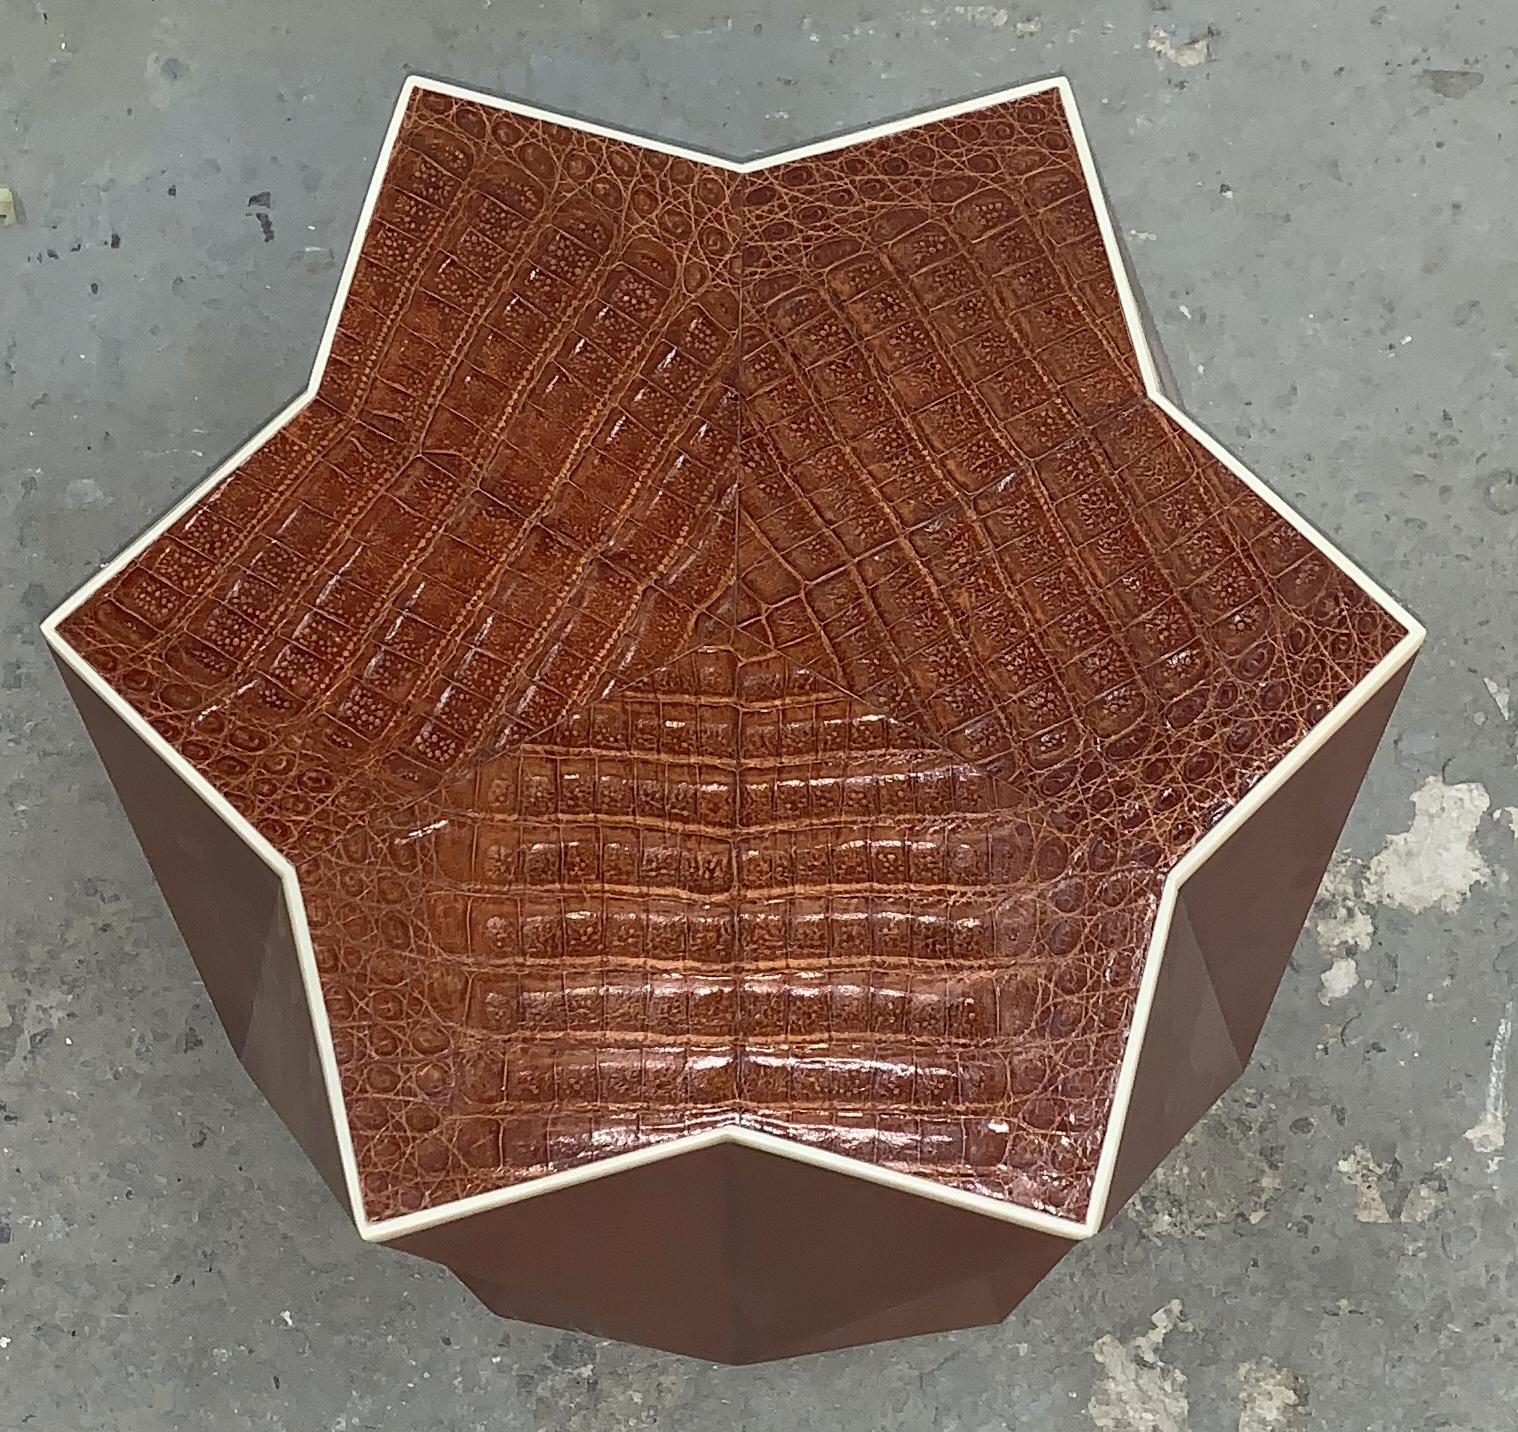 Magnifique table d'appoint Lorin Marsh en cuir gaufré alligator, faux cuir de chèvre et incrustation d'os en forme d'étoile géométrique.